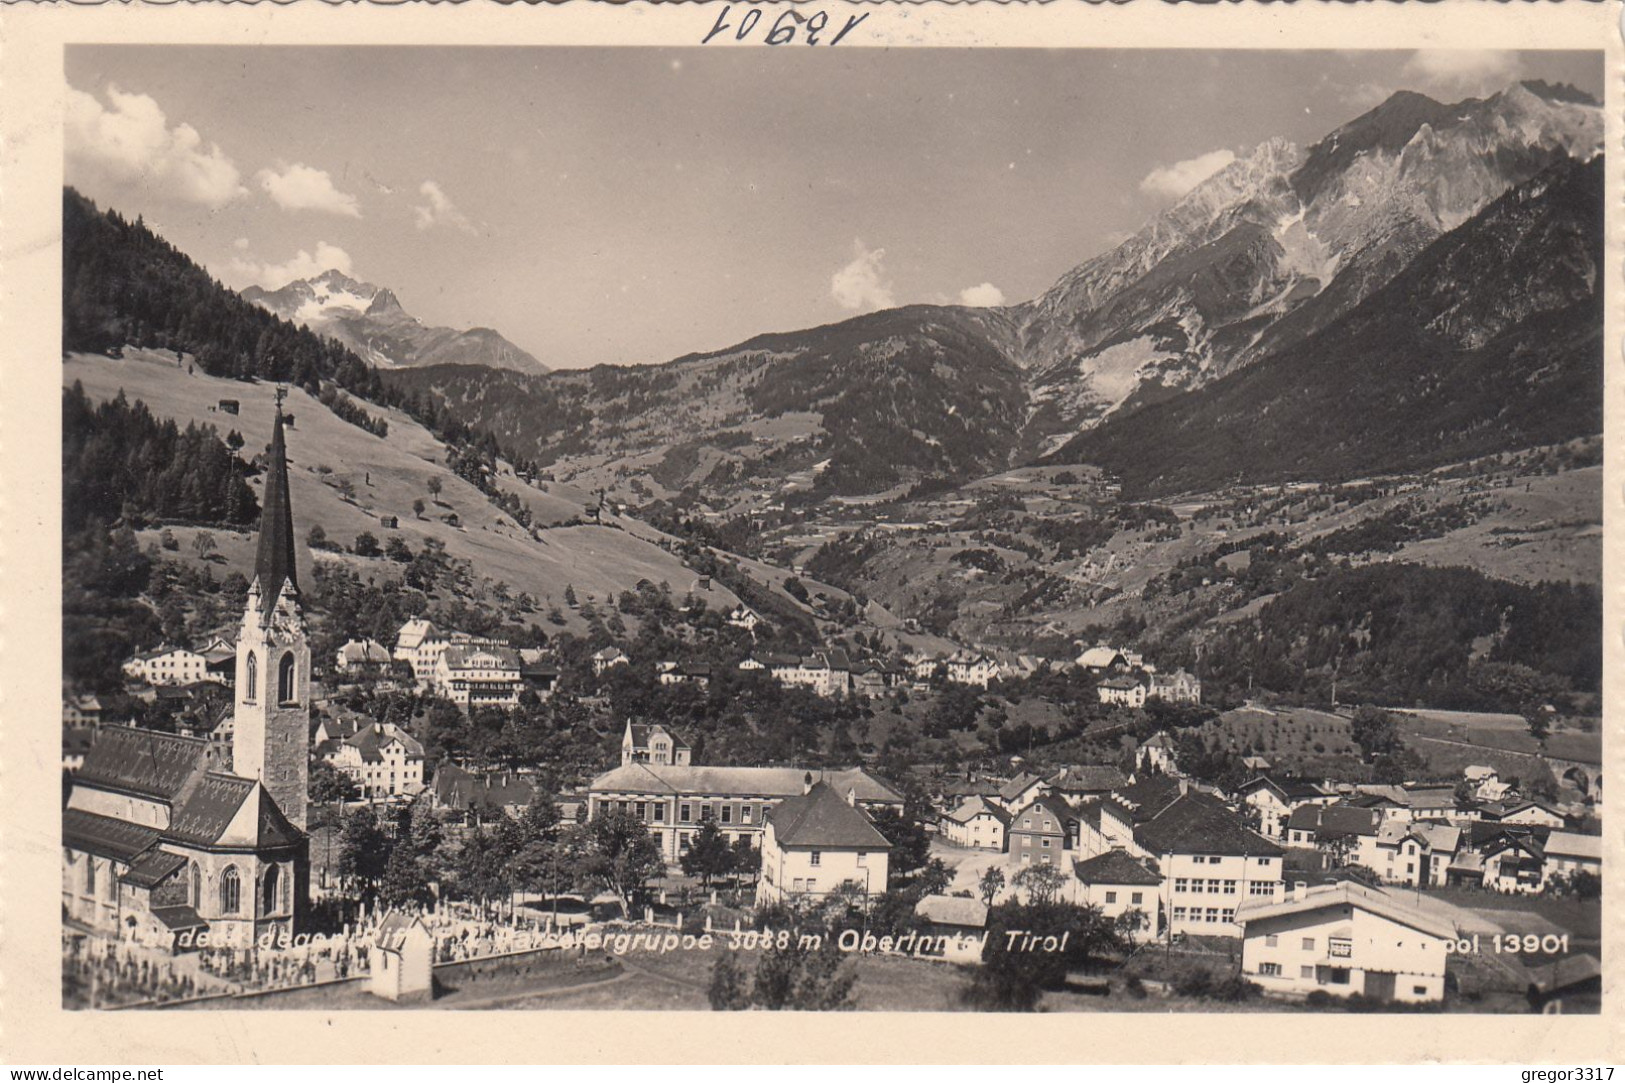 E3847) LANDECK - Tirol  Gegen Riffler Und Passeiergruppe - Oberinntal - Tirol - Häuser Kirche Friedhof ALT - Landeck